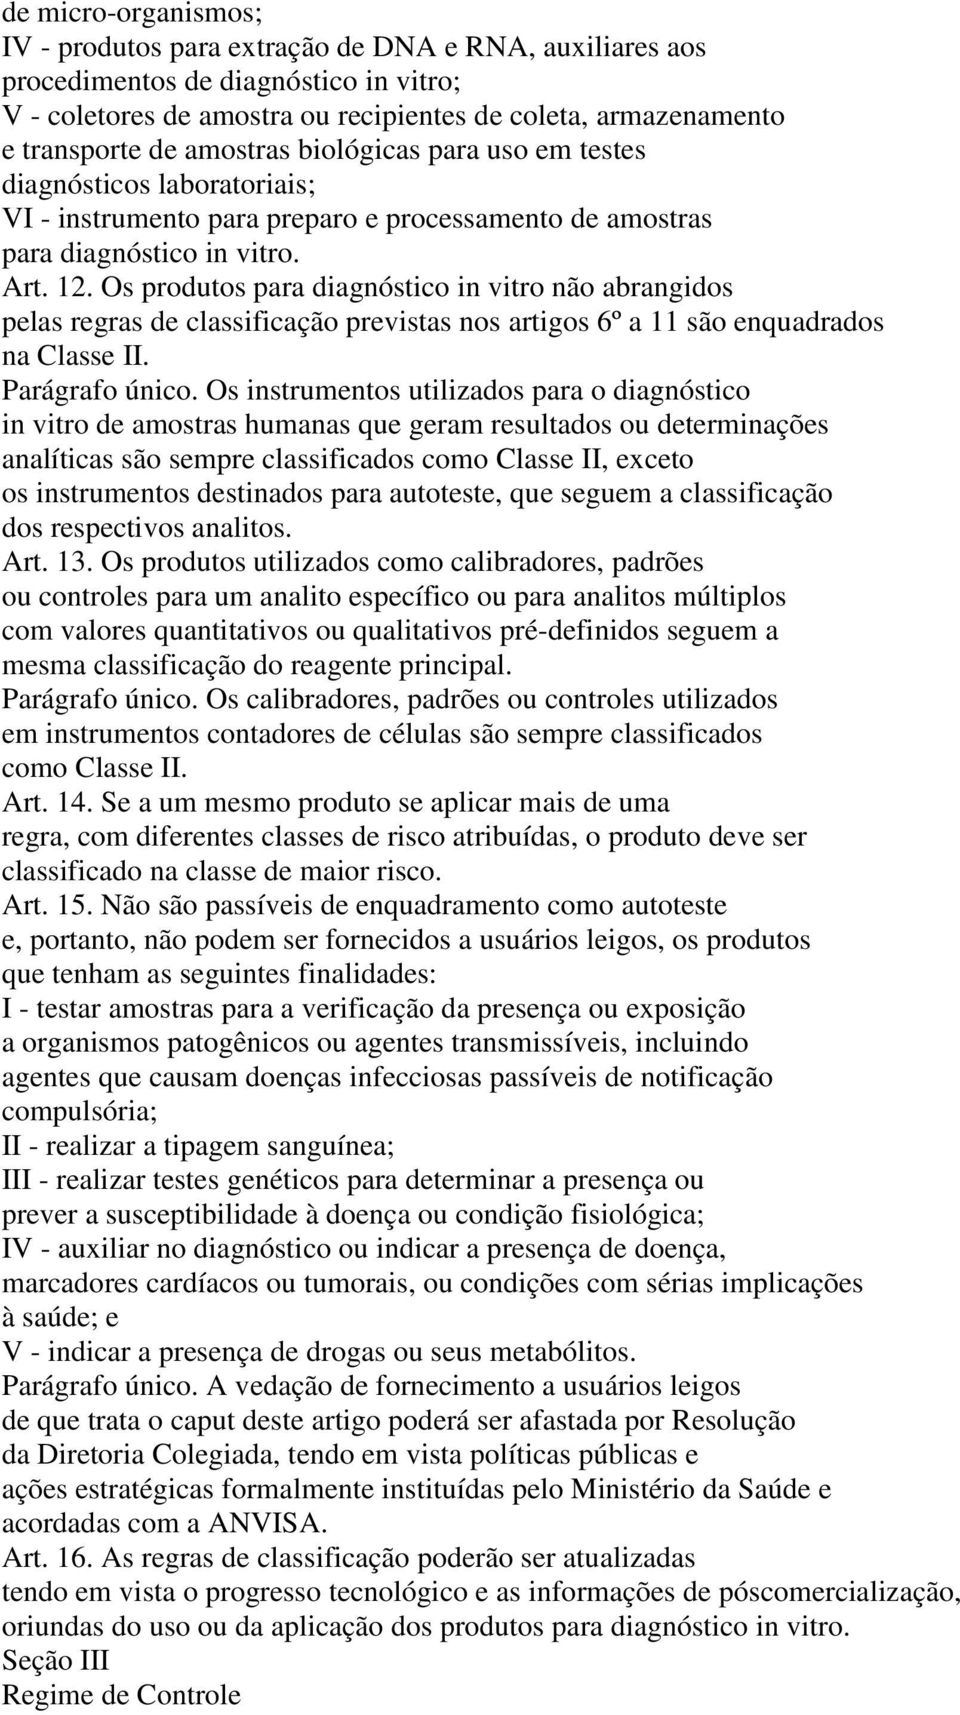 Os produtos para diagnóstico in vitro não abrangidos pelas regras de classificação previstas nos artigos 6º a 11 são enquadrados na Classe II. Parágrafo único.